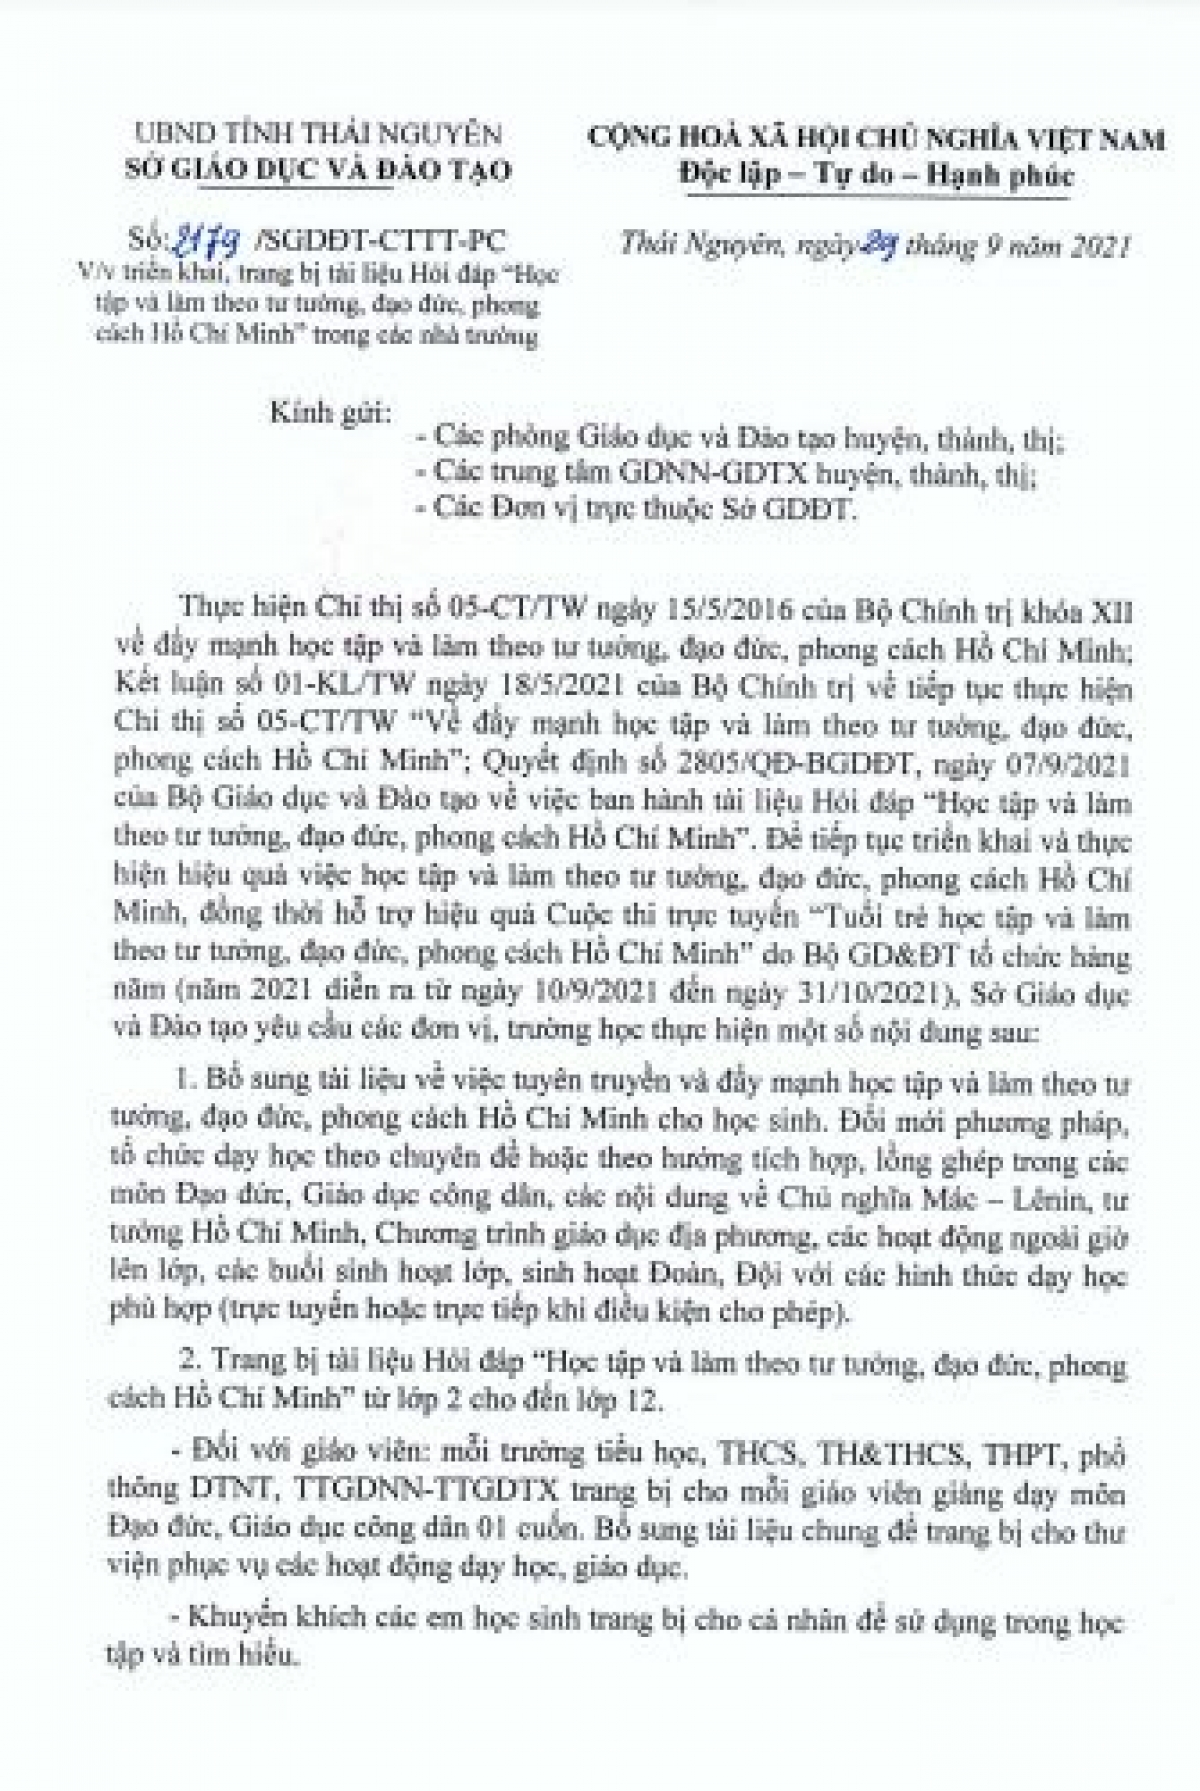 Văn bản chỉ đạo của Sở GD-ĐT tỉnh Thái Nguyên về việc trang bị tài liệu Hỏi đáp “Học tập và làm theo tư tưởng, đạo đức, phong cách Hồ Chí Minh”